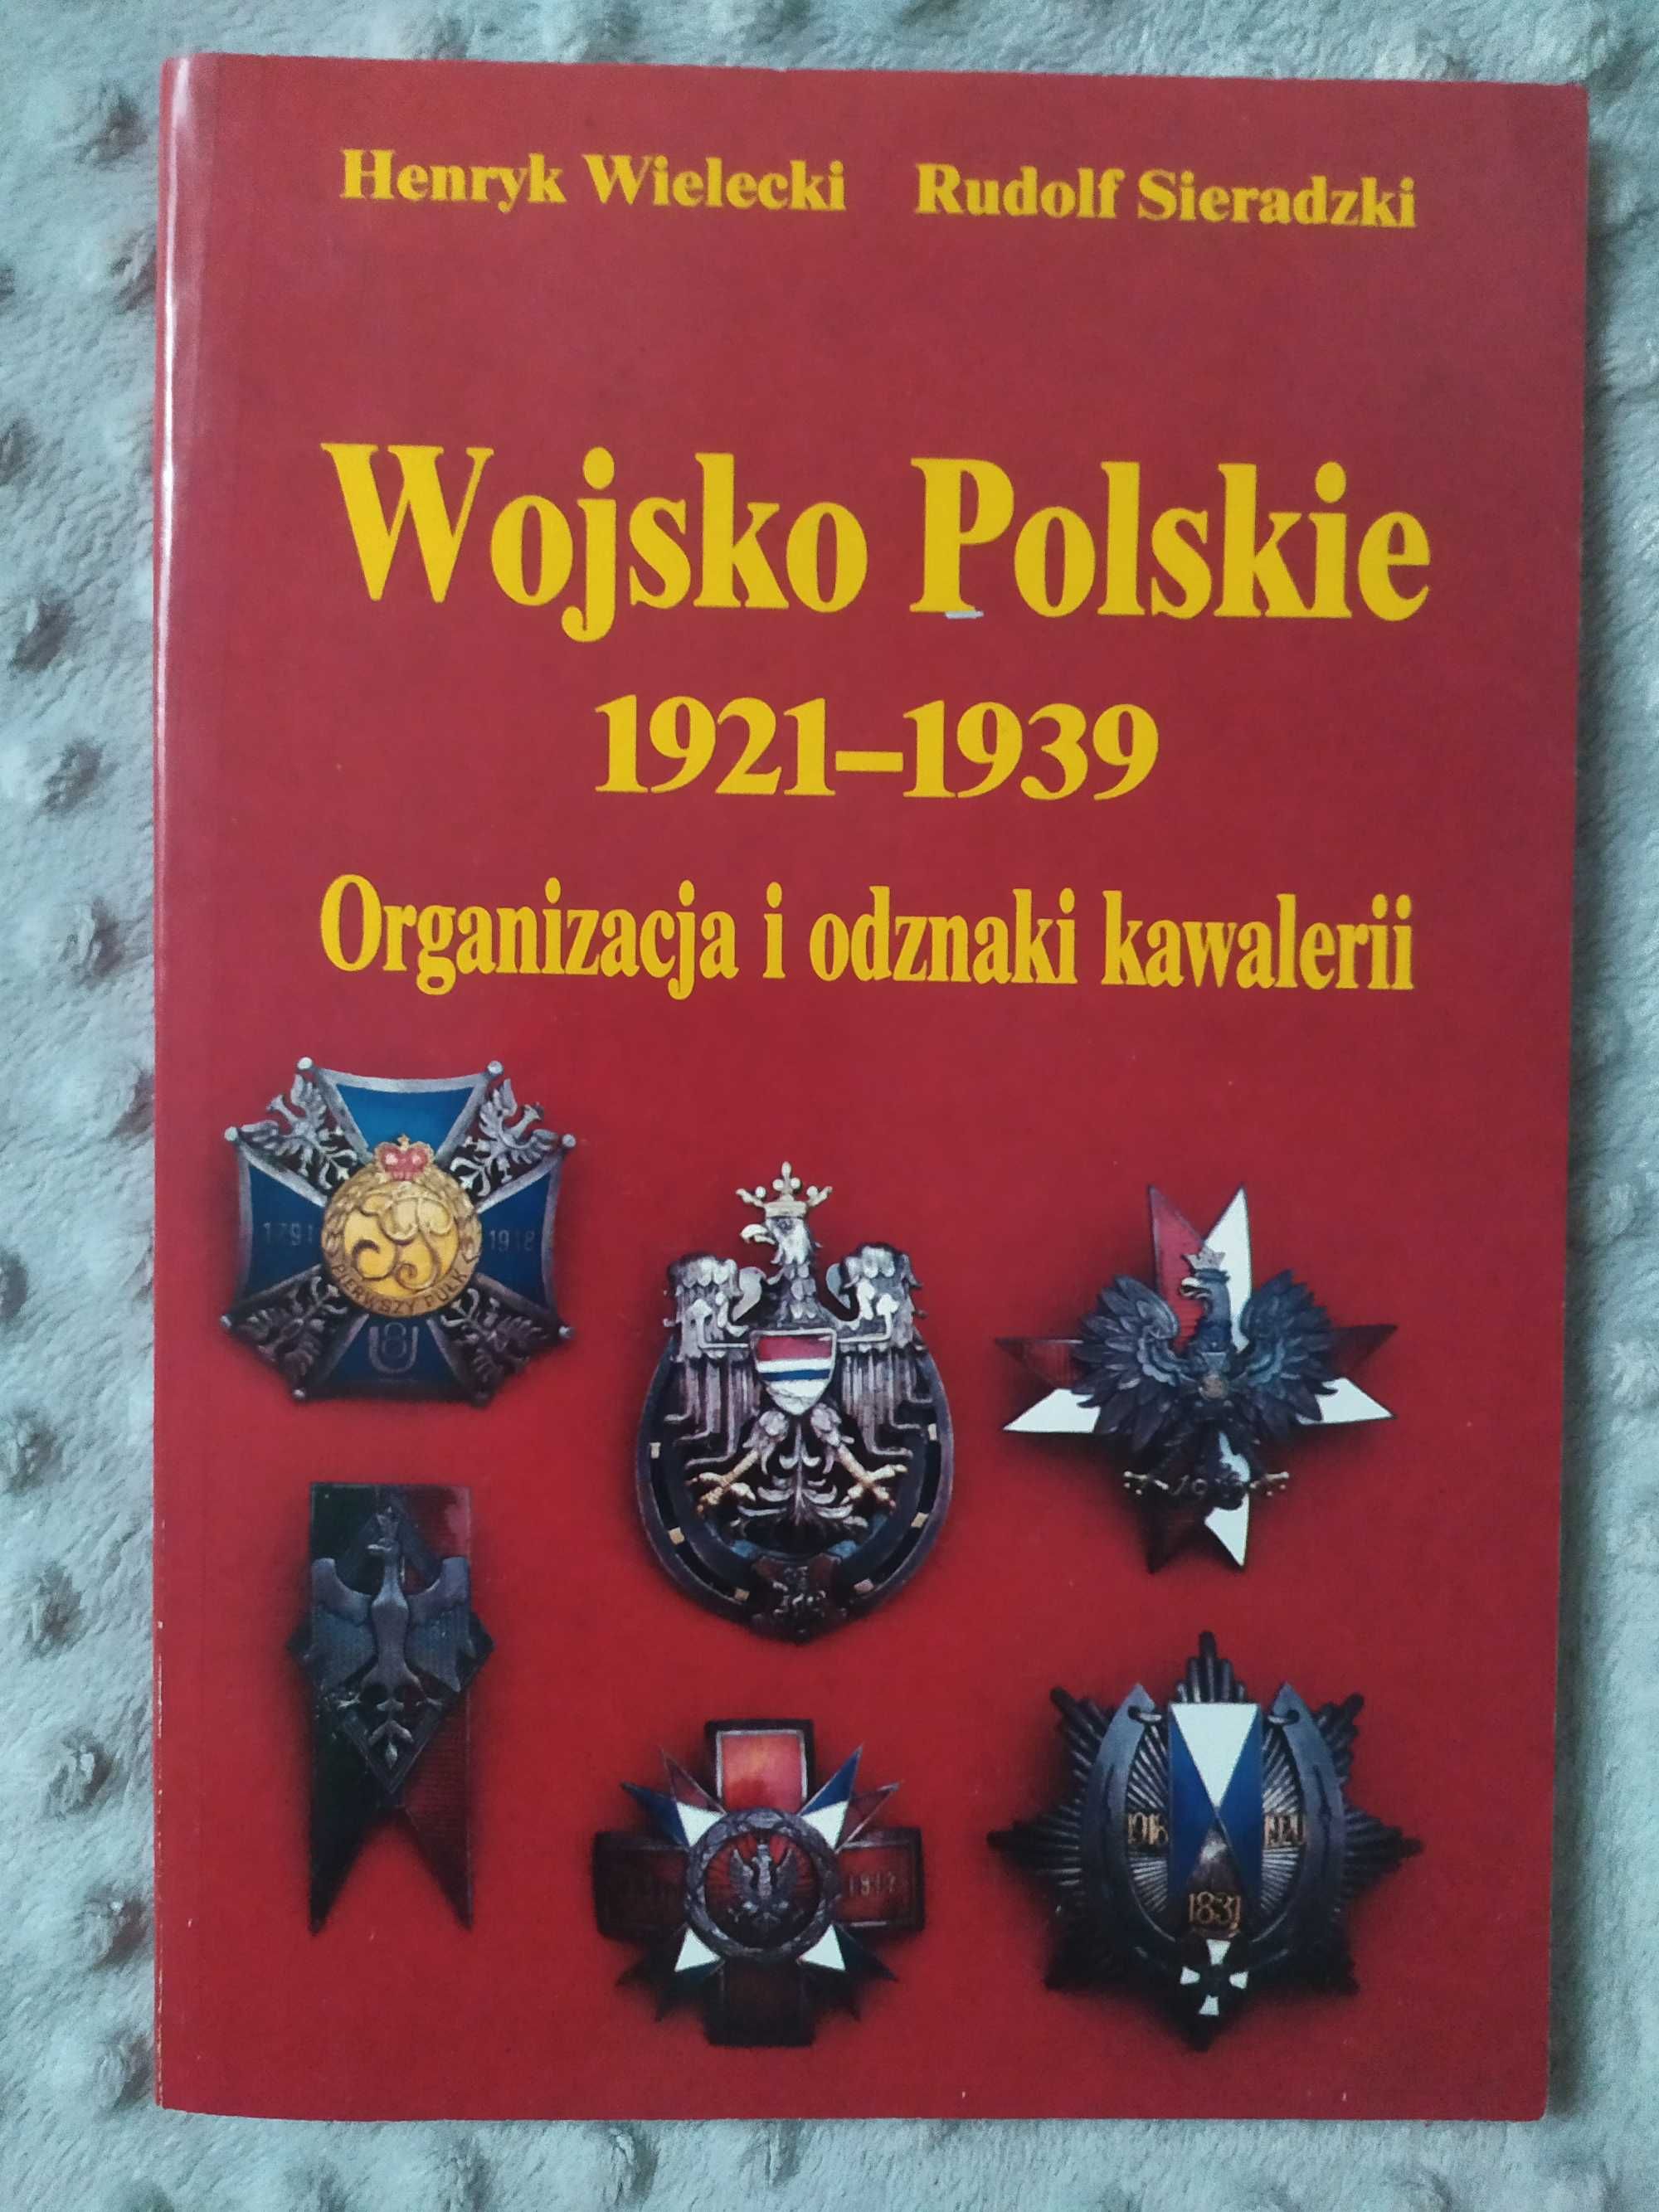 Książka Wojsko Polskie - organizacja i odznaki kawalerii CREAR